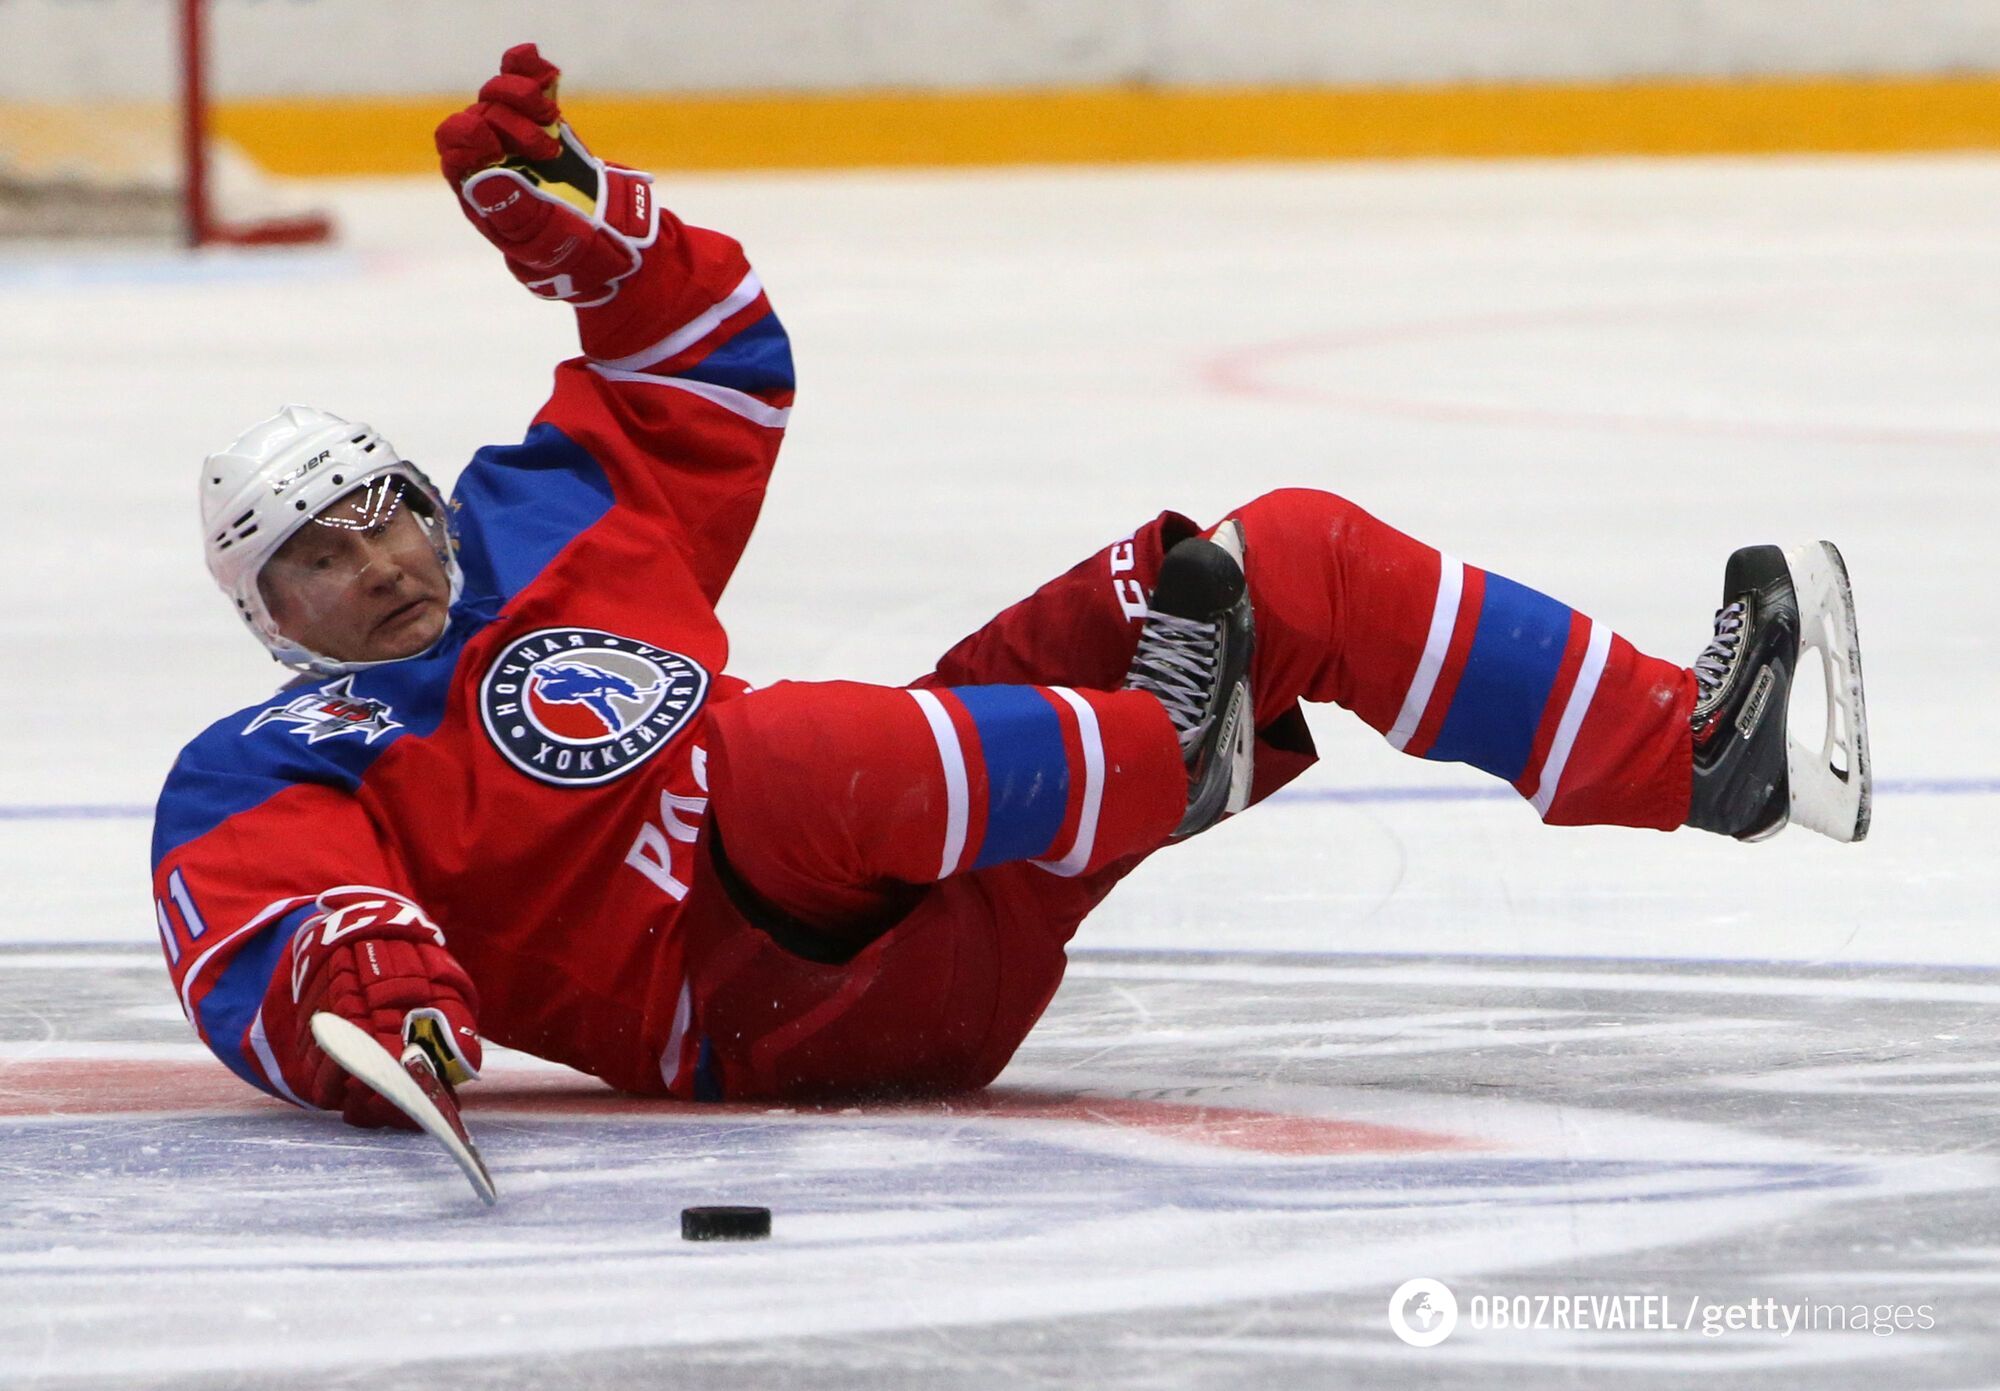 Rosyjski mistrz olimpijski nazywa rosyjski hokej silnym, ponieważ gra w nim Putin